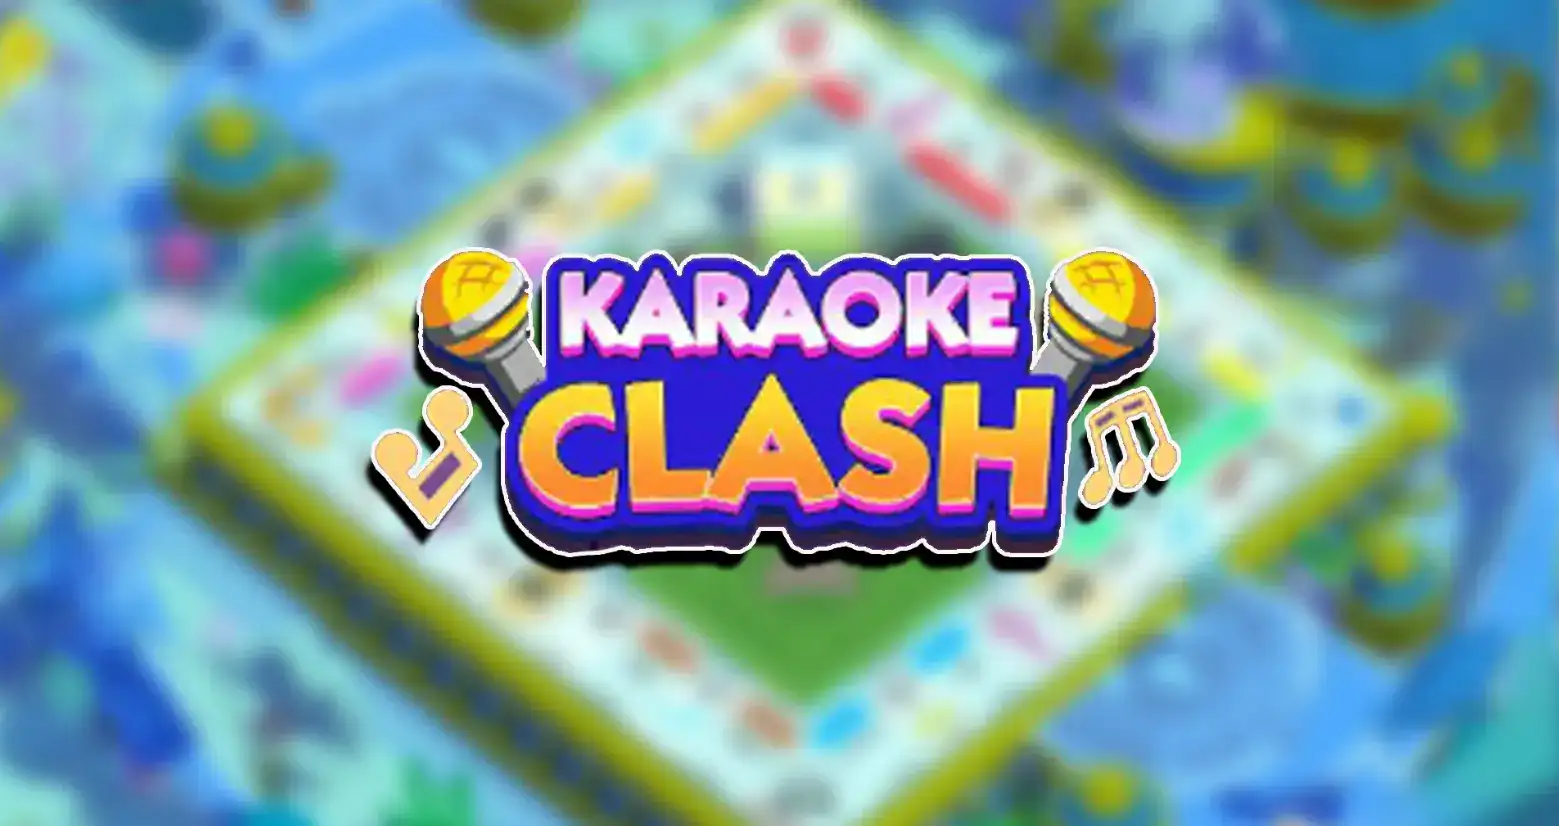 monopoly go karaoke clash rewards and milestones